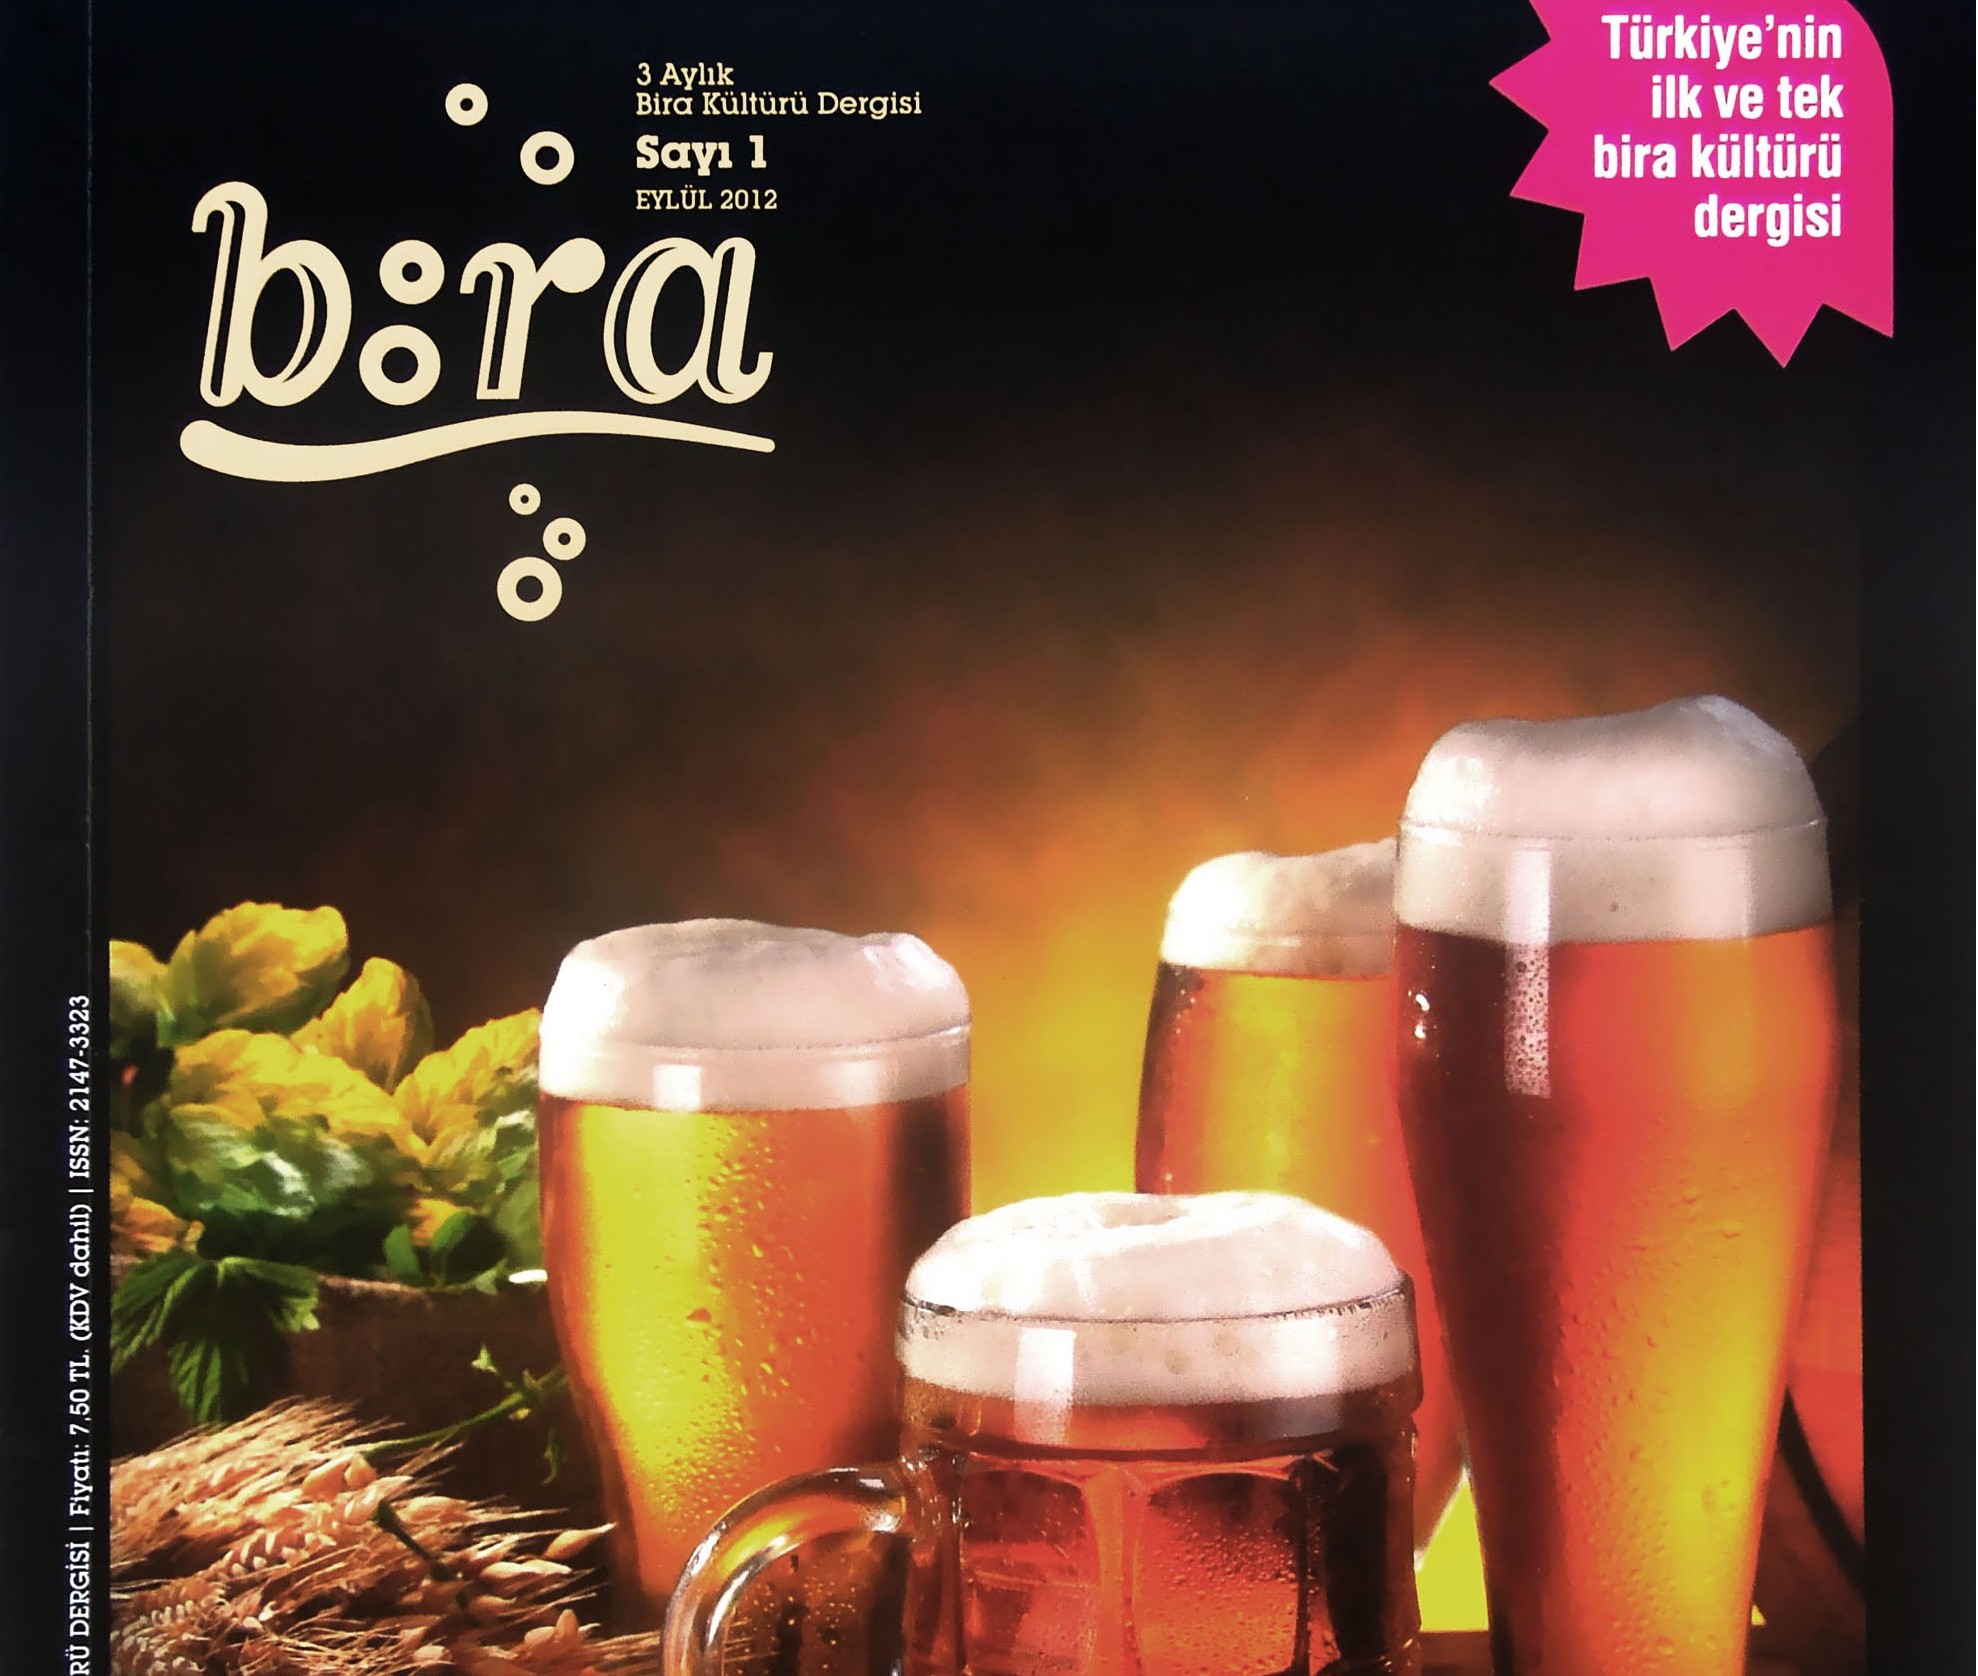 Türkiye’nin İlk Bira Kültürü Dergisi B:RA raflardaki yerini aldı